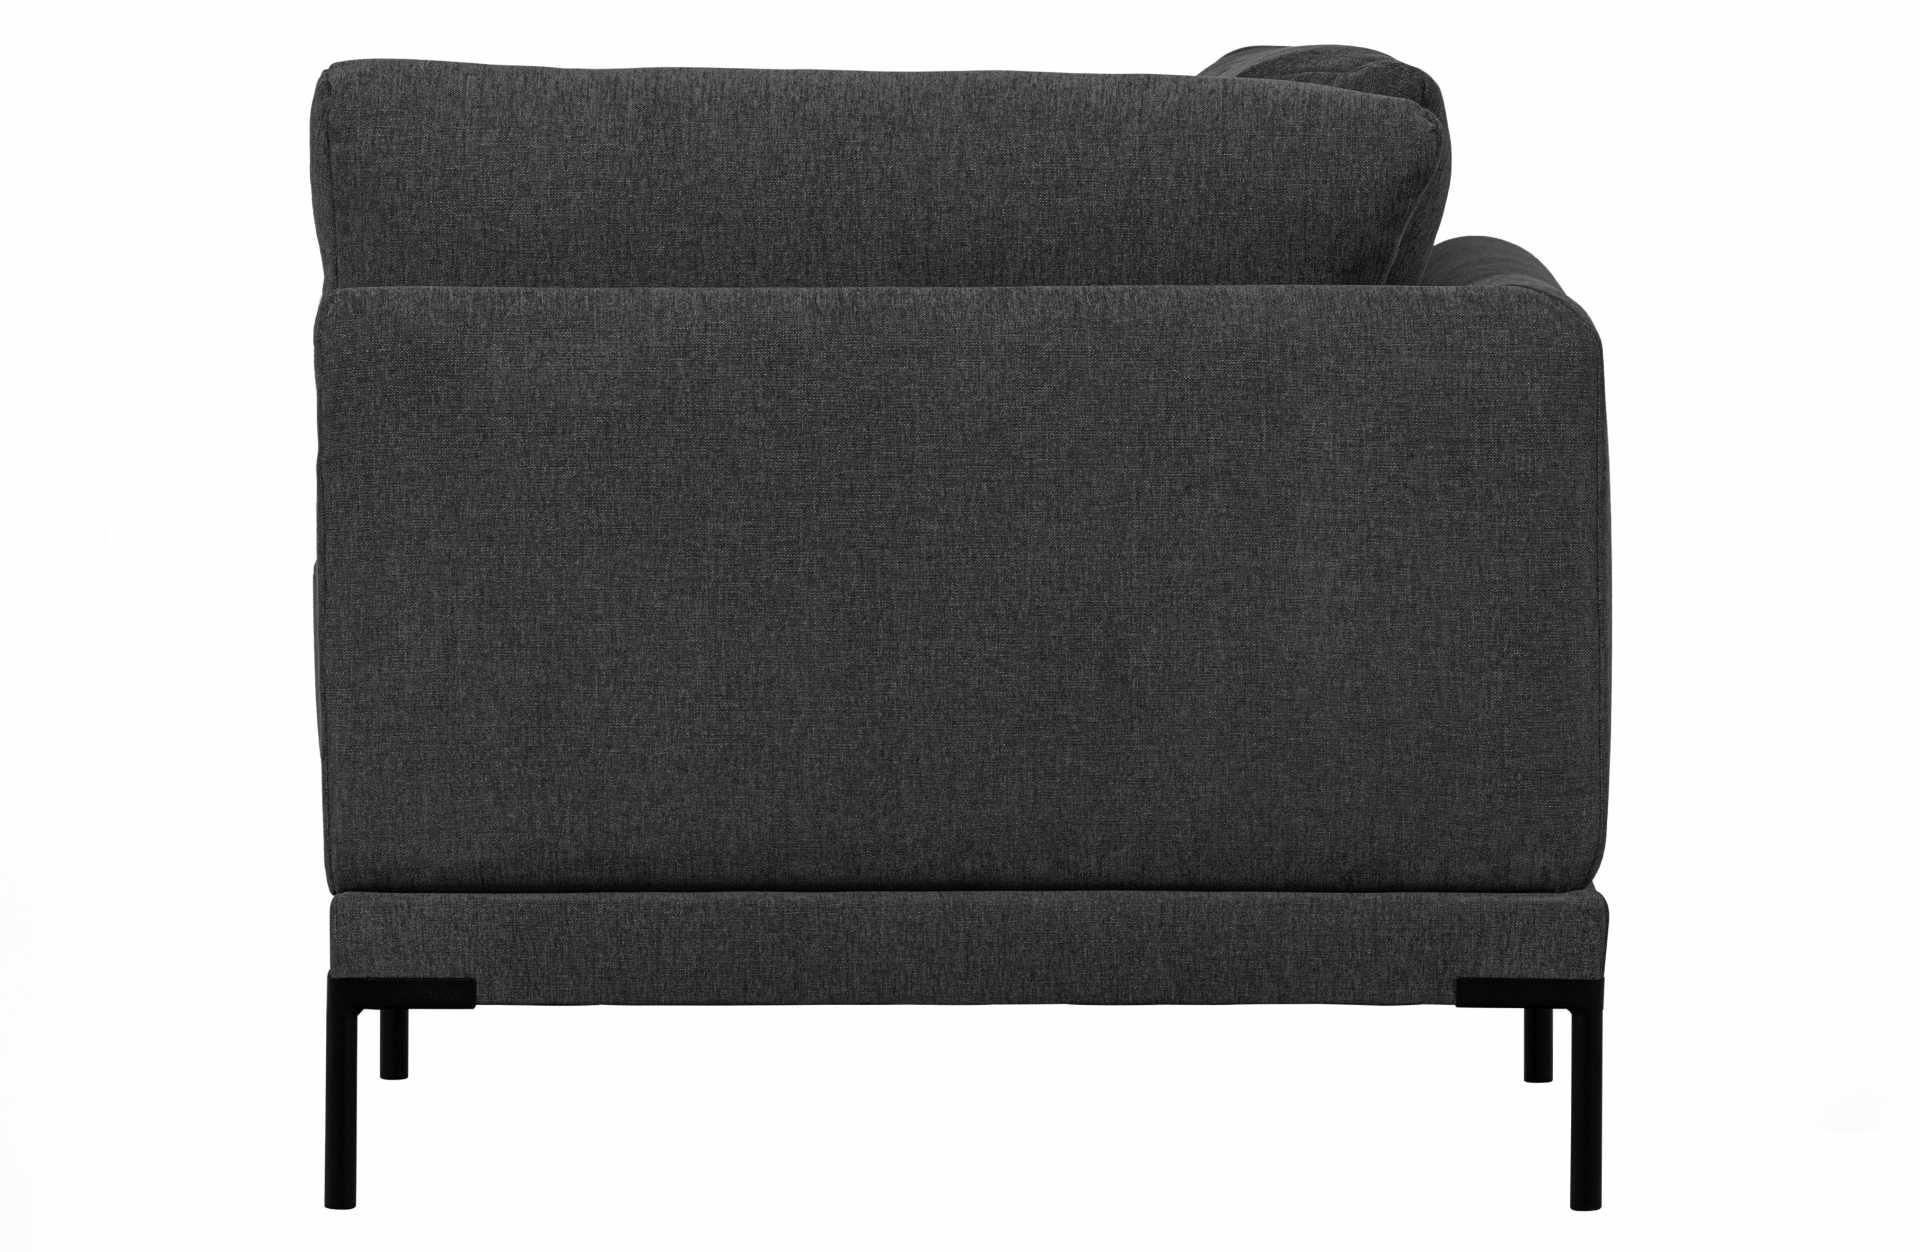 Das Modulsofa Couple Lounge überzeugt mit seinem modernen Design. Das Eck-Element wurde aus Melange Stoff gefertigt, welcher einen einen dunkelgrauen Farbton besitzen. Das Gestell ist aus Metall und hat eine schwarze Farbe. Das Element hat eine Länge von 